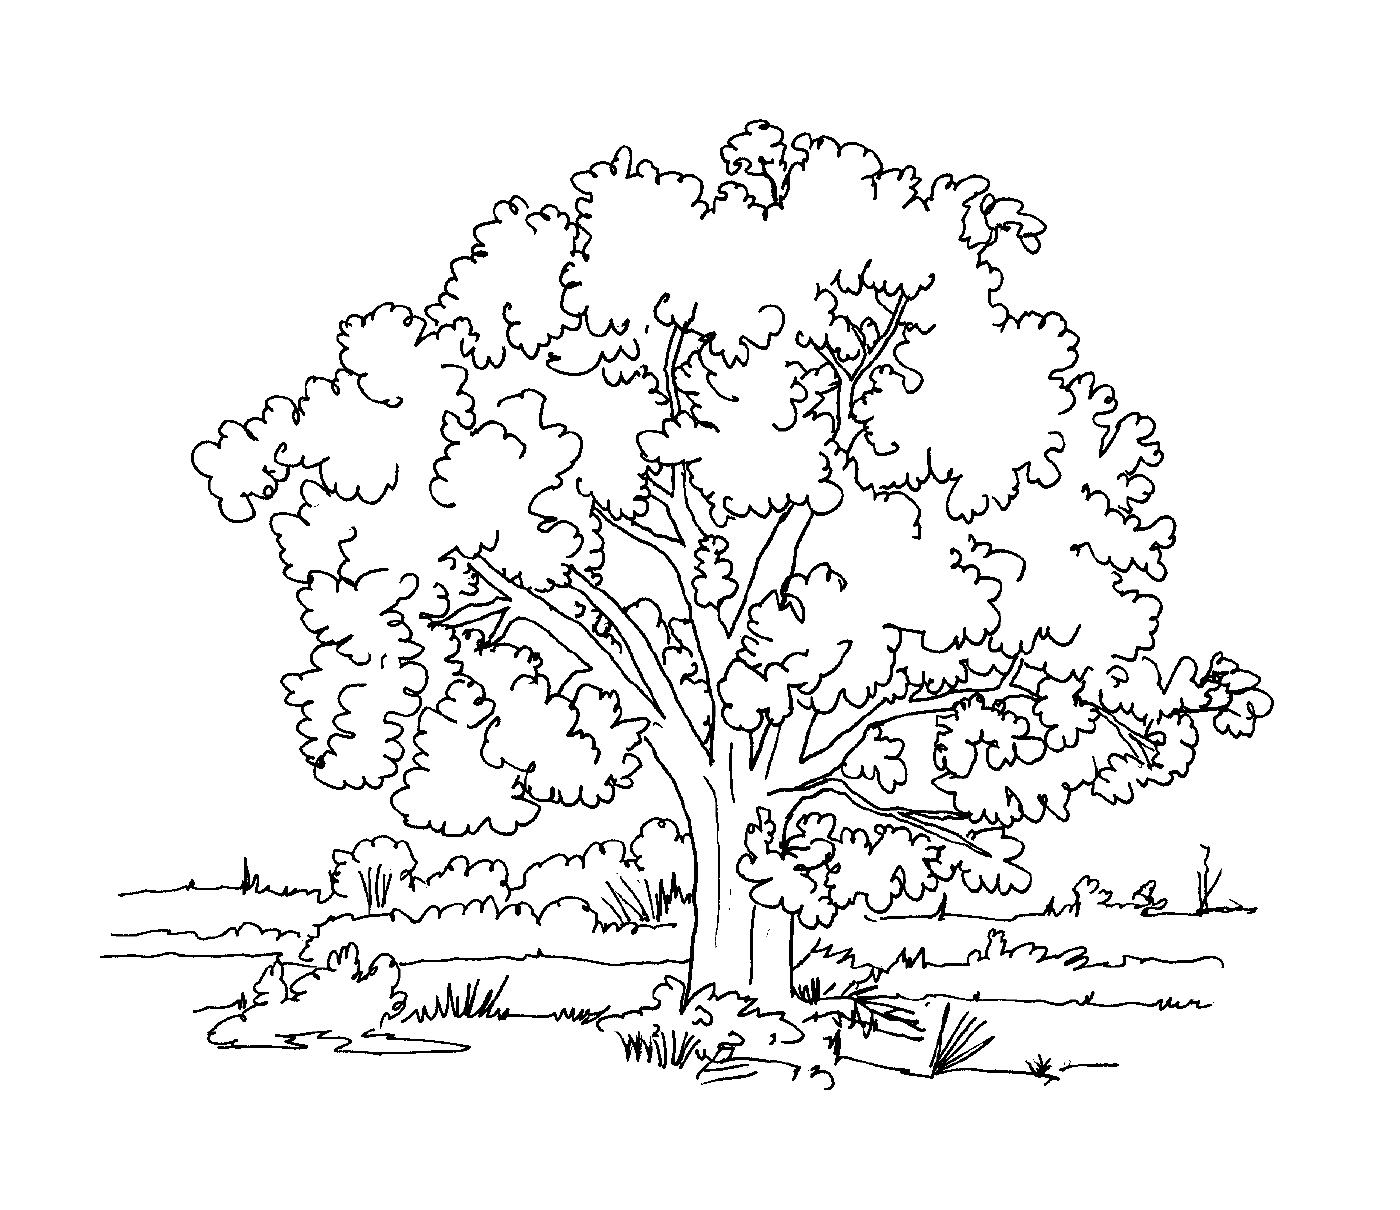   Un arbre 